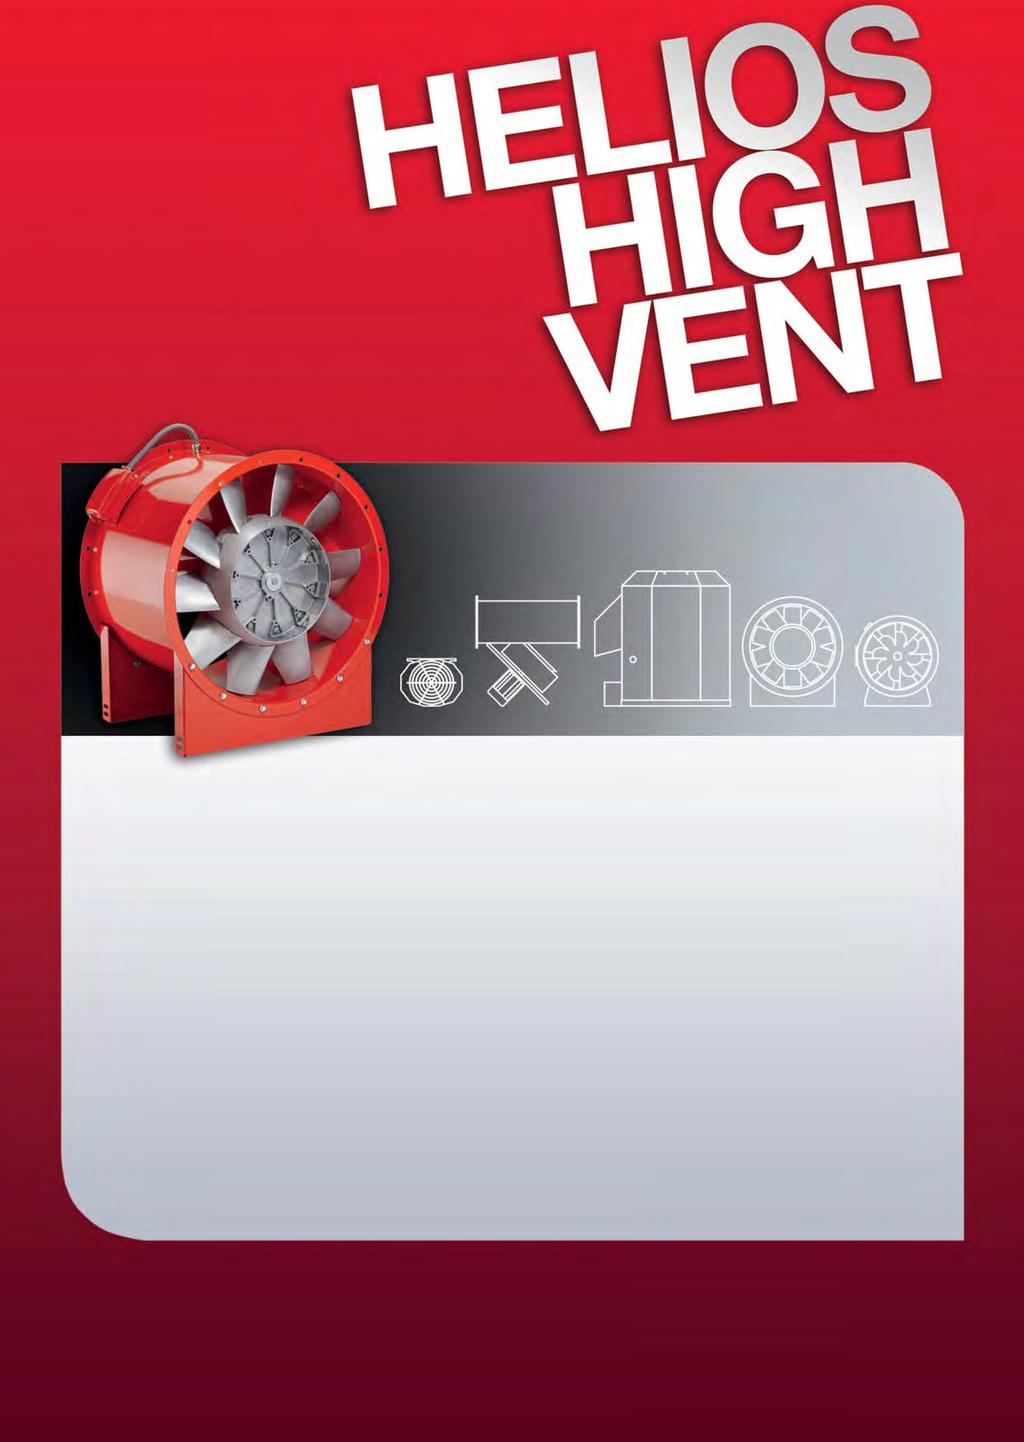 HighVent teknologialla hoidat lähes kaikki puhallinta vaativat ilmastoinnin ratkaisut.